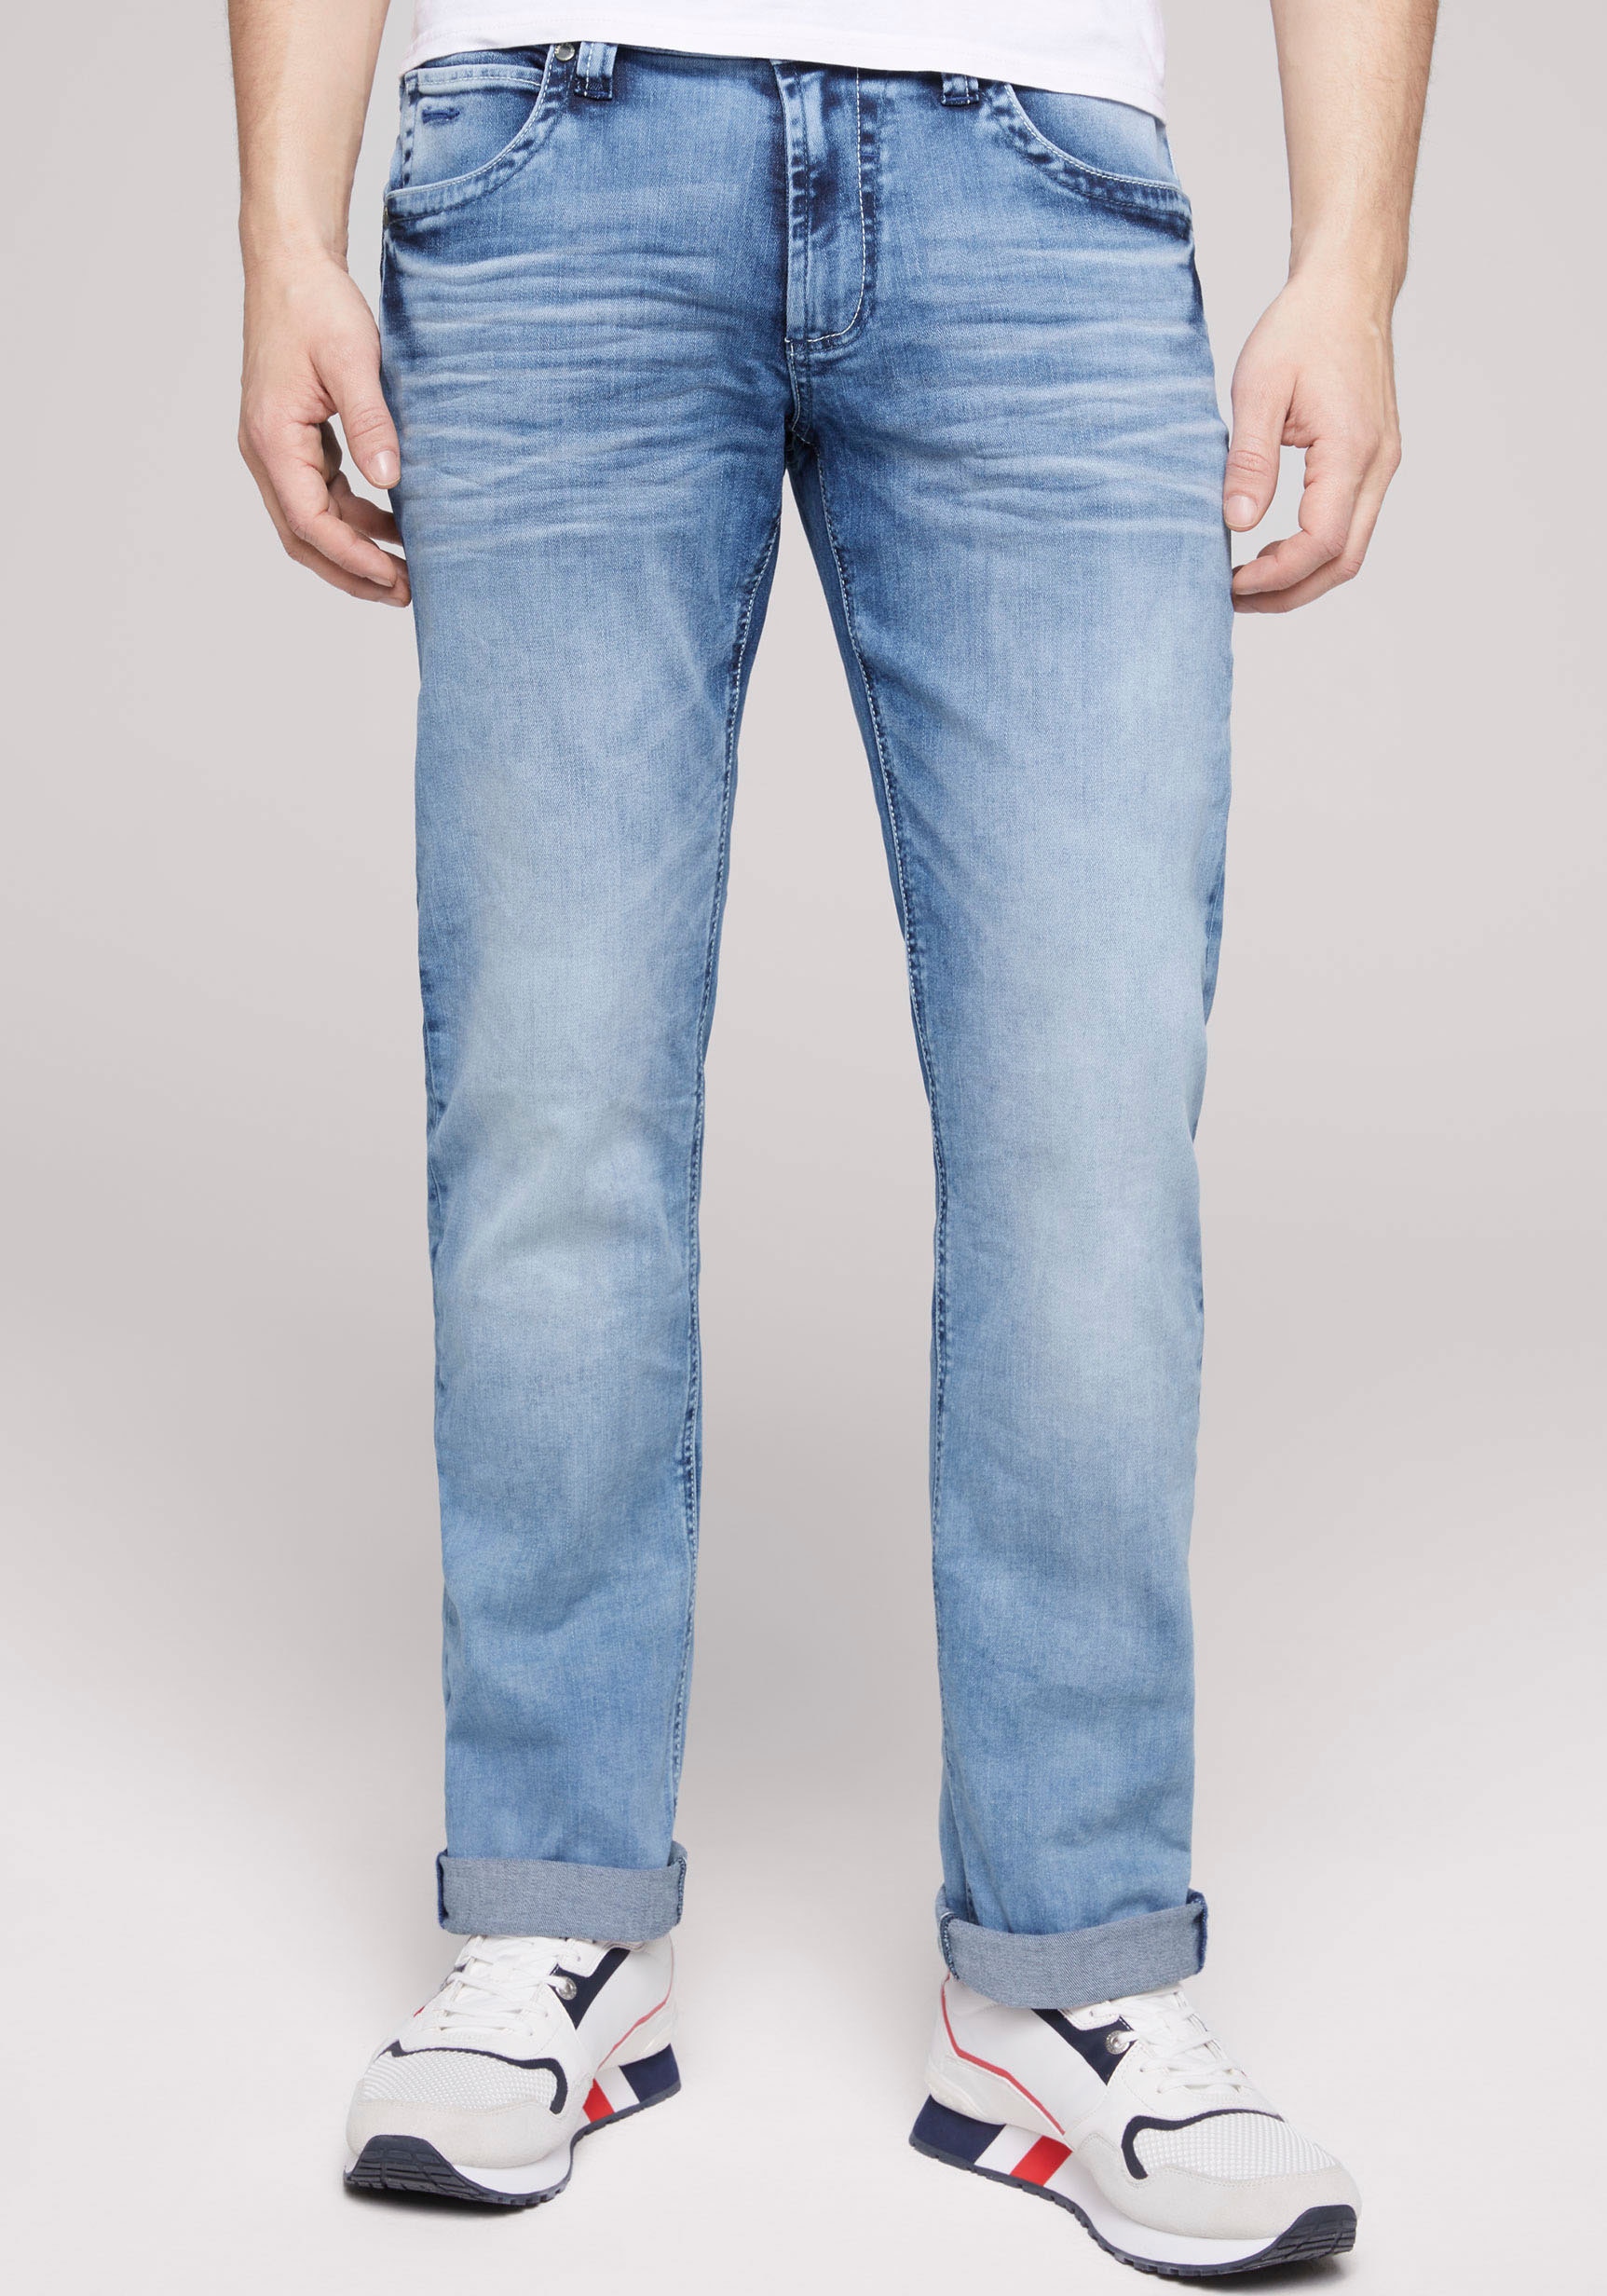 CAMP DAVID Straight-Jeans »NI:CO:R611«, mit markanten Steppnähten online  kaufen bei OTTO